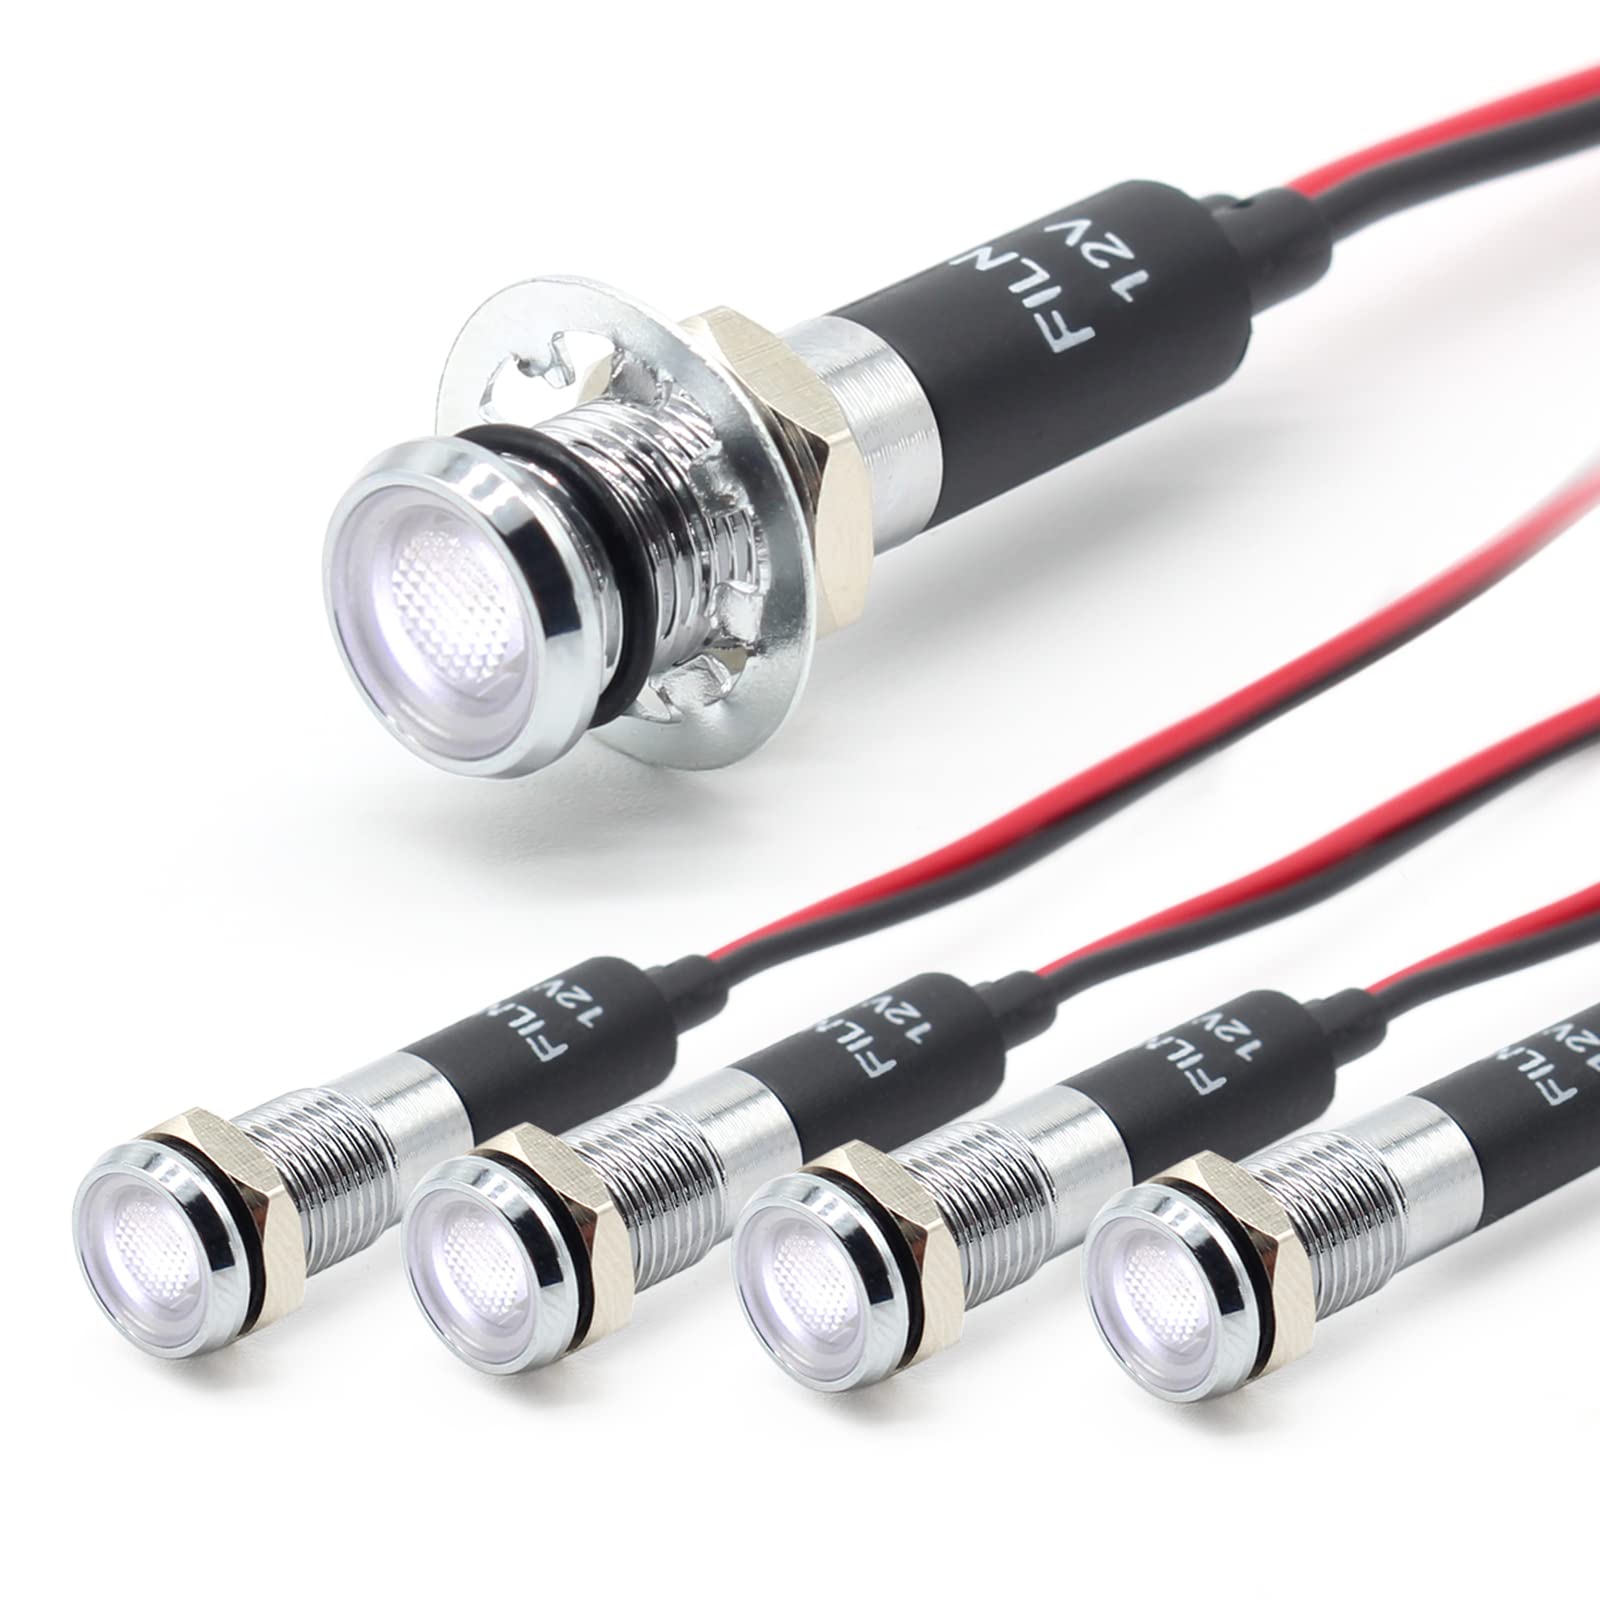 FILN 5 stücke 8mm (5/16 ") 12V LED kontrollleuchte wasserdichte pilot signallampe Meldeleuchte metalltafelleuchten(Messing vernickeltt,Weiß5stück) von FILN